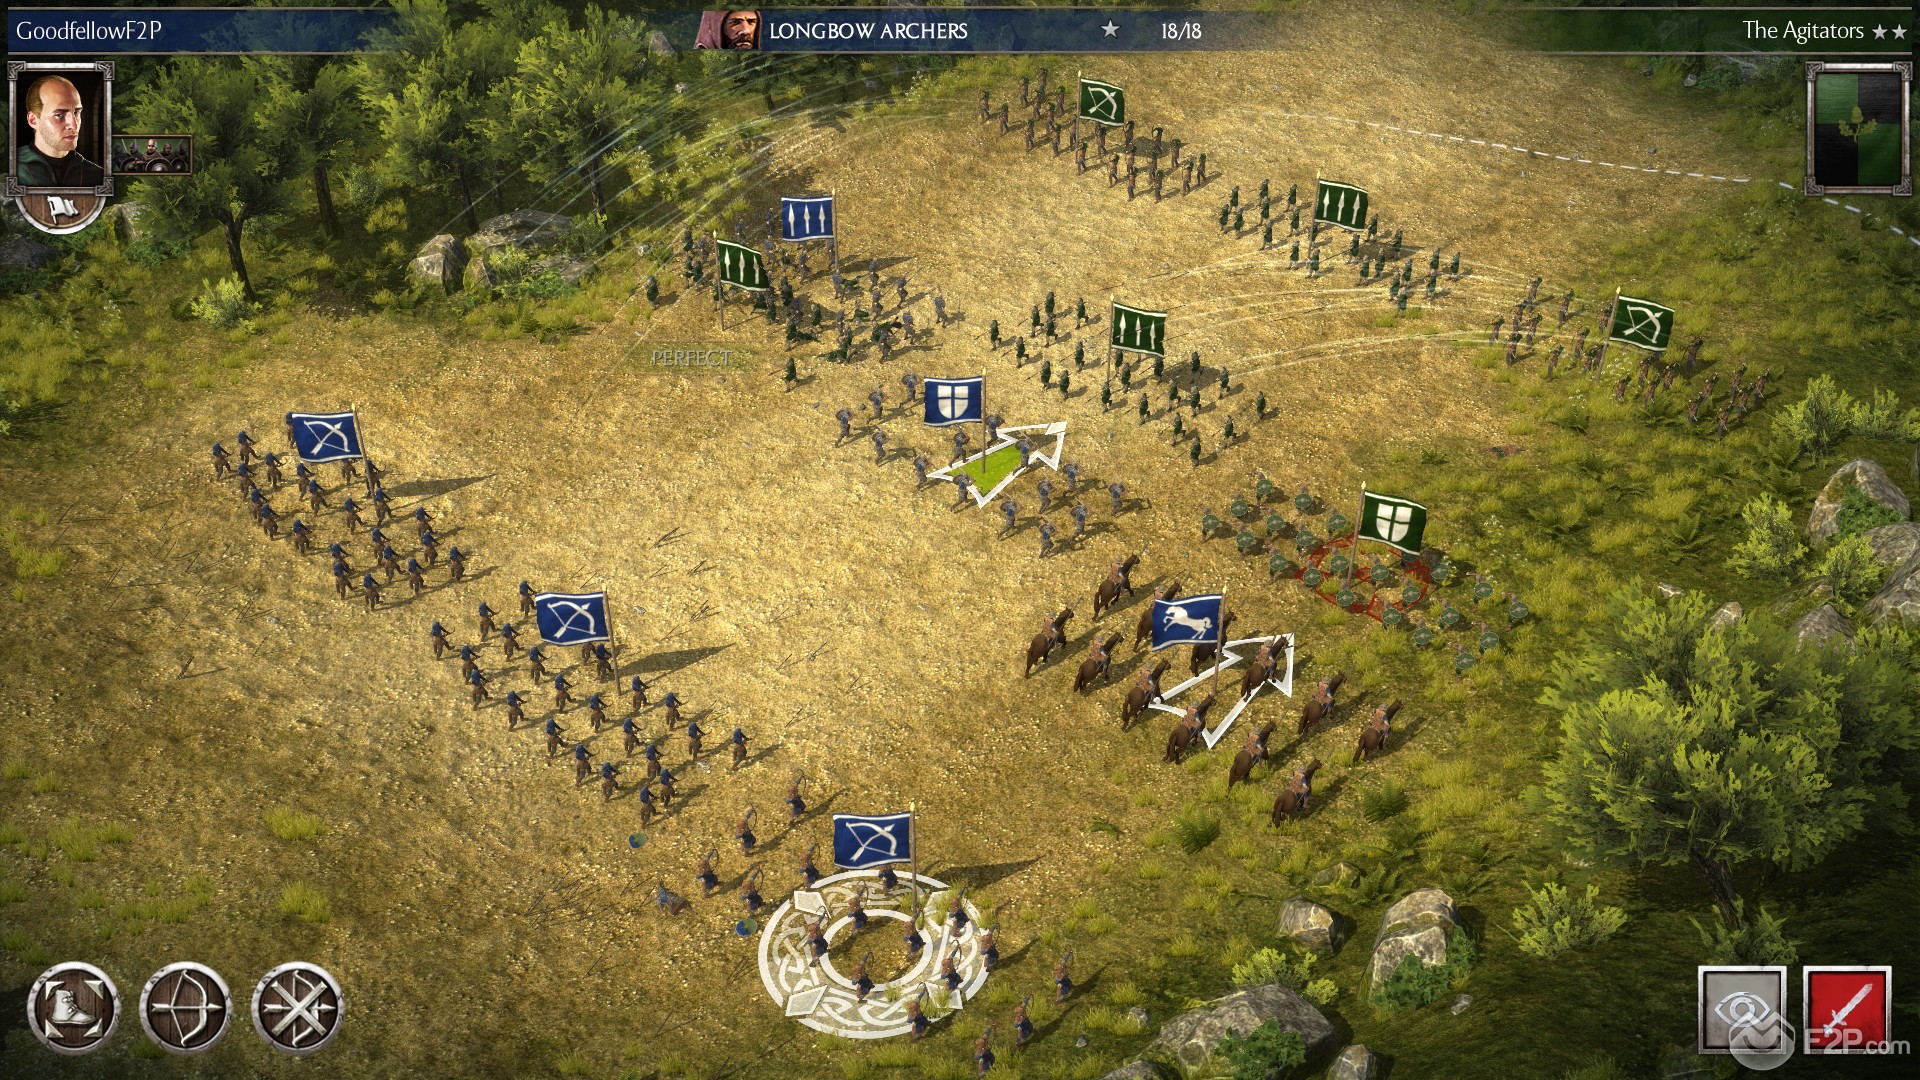 Total War Battles